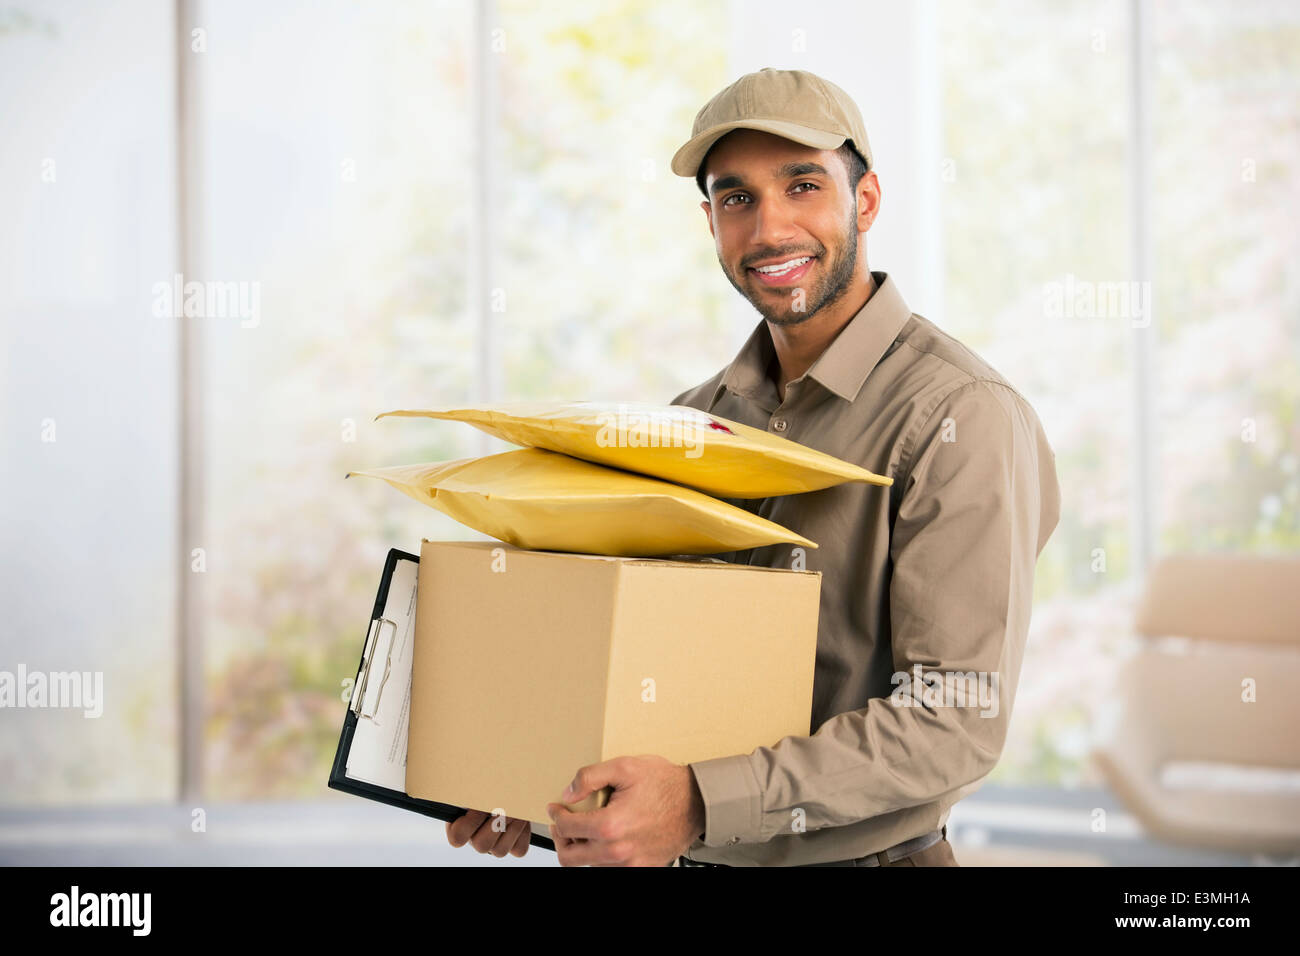 Portrait of smiling deliveryman Banque D'Images